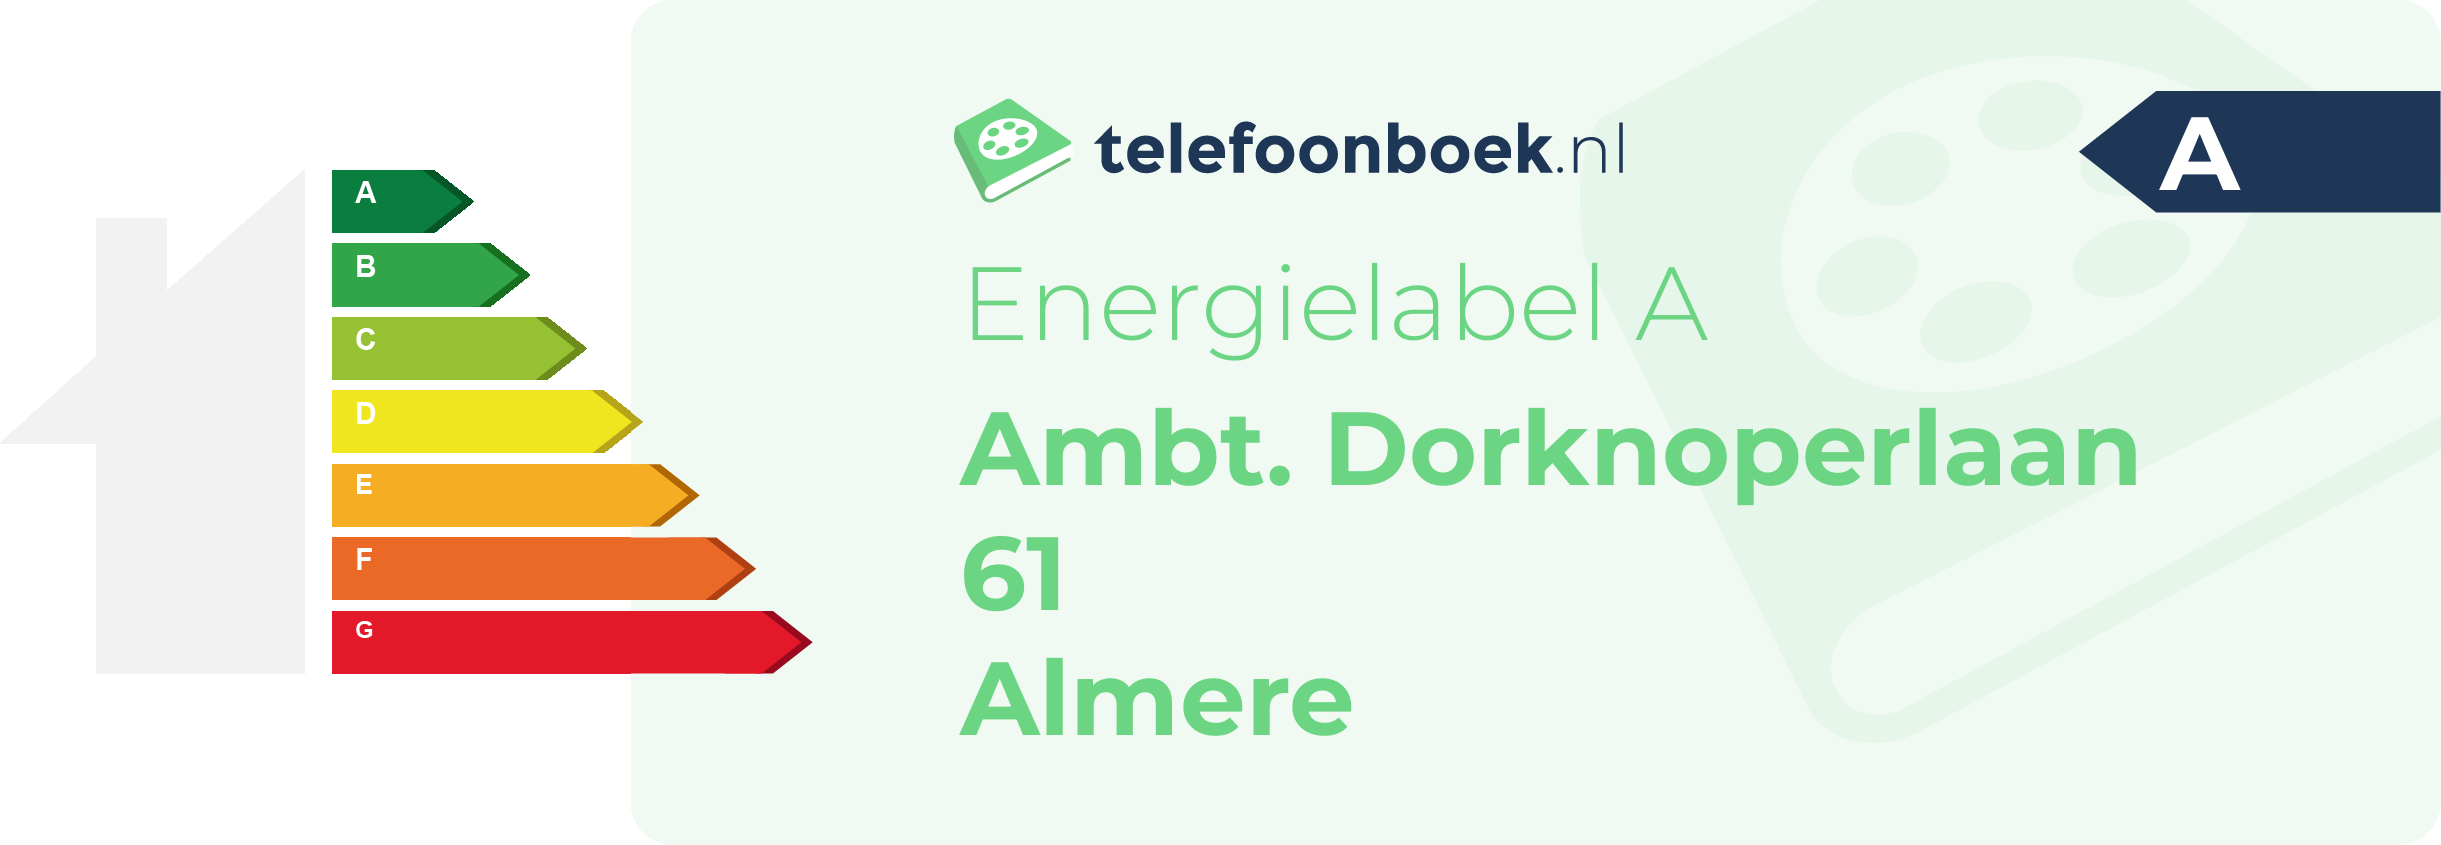 Energielabel Ambt. Dorknoperlaan 61 Almere